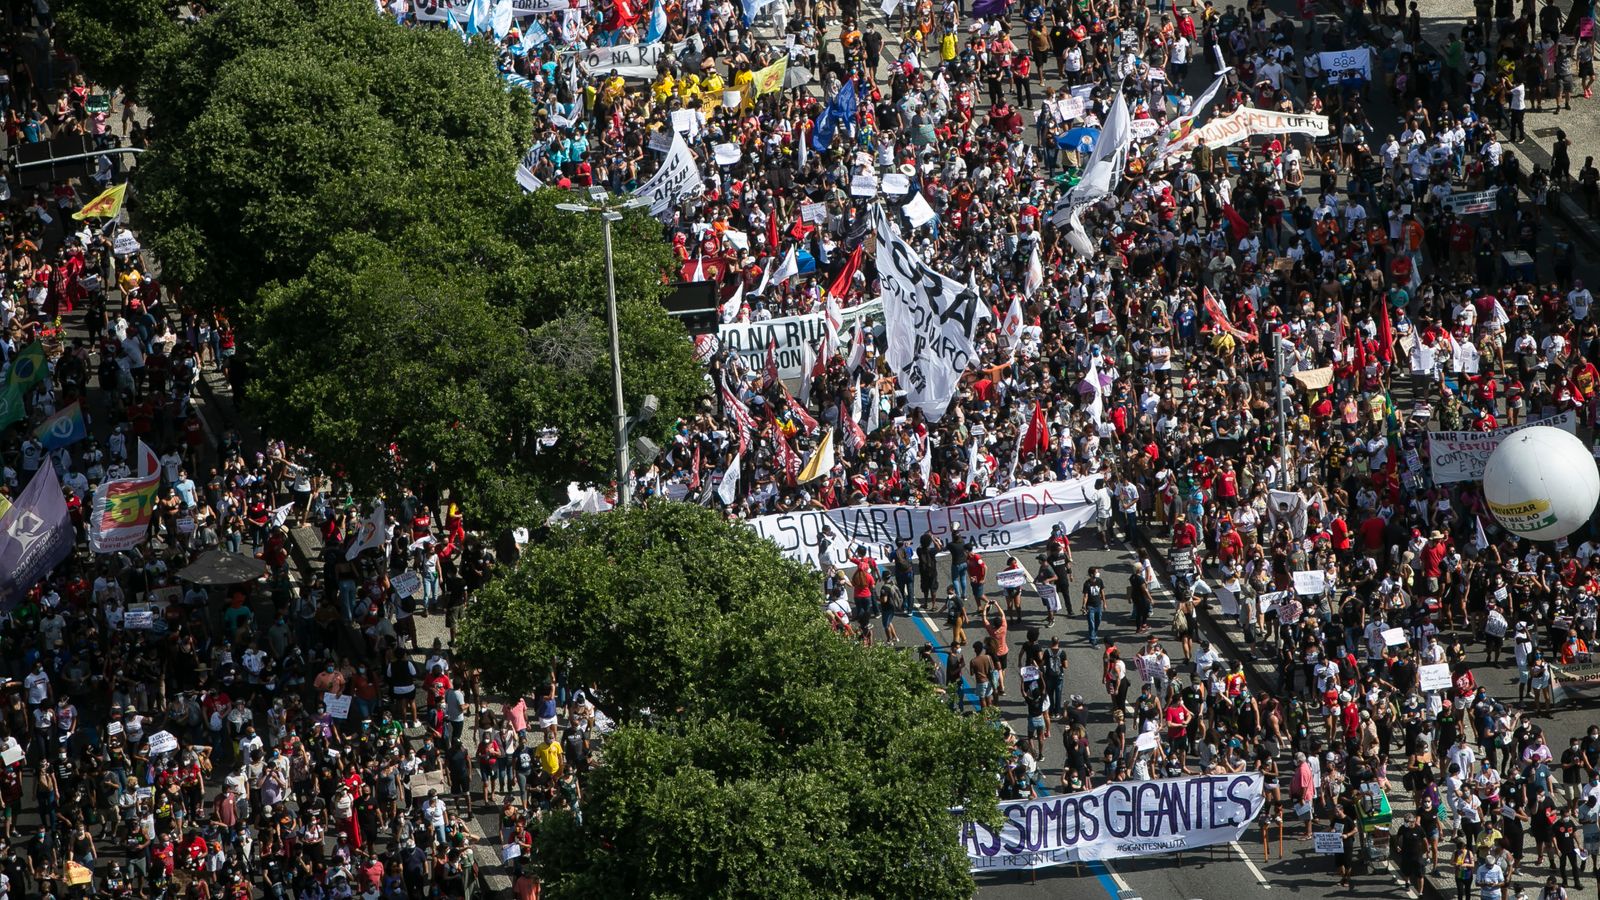 COVID-19: Thousands protest across Brazil over President Bolsonaro’s handling of coronavirus crisis